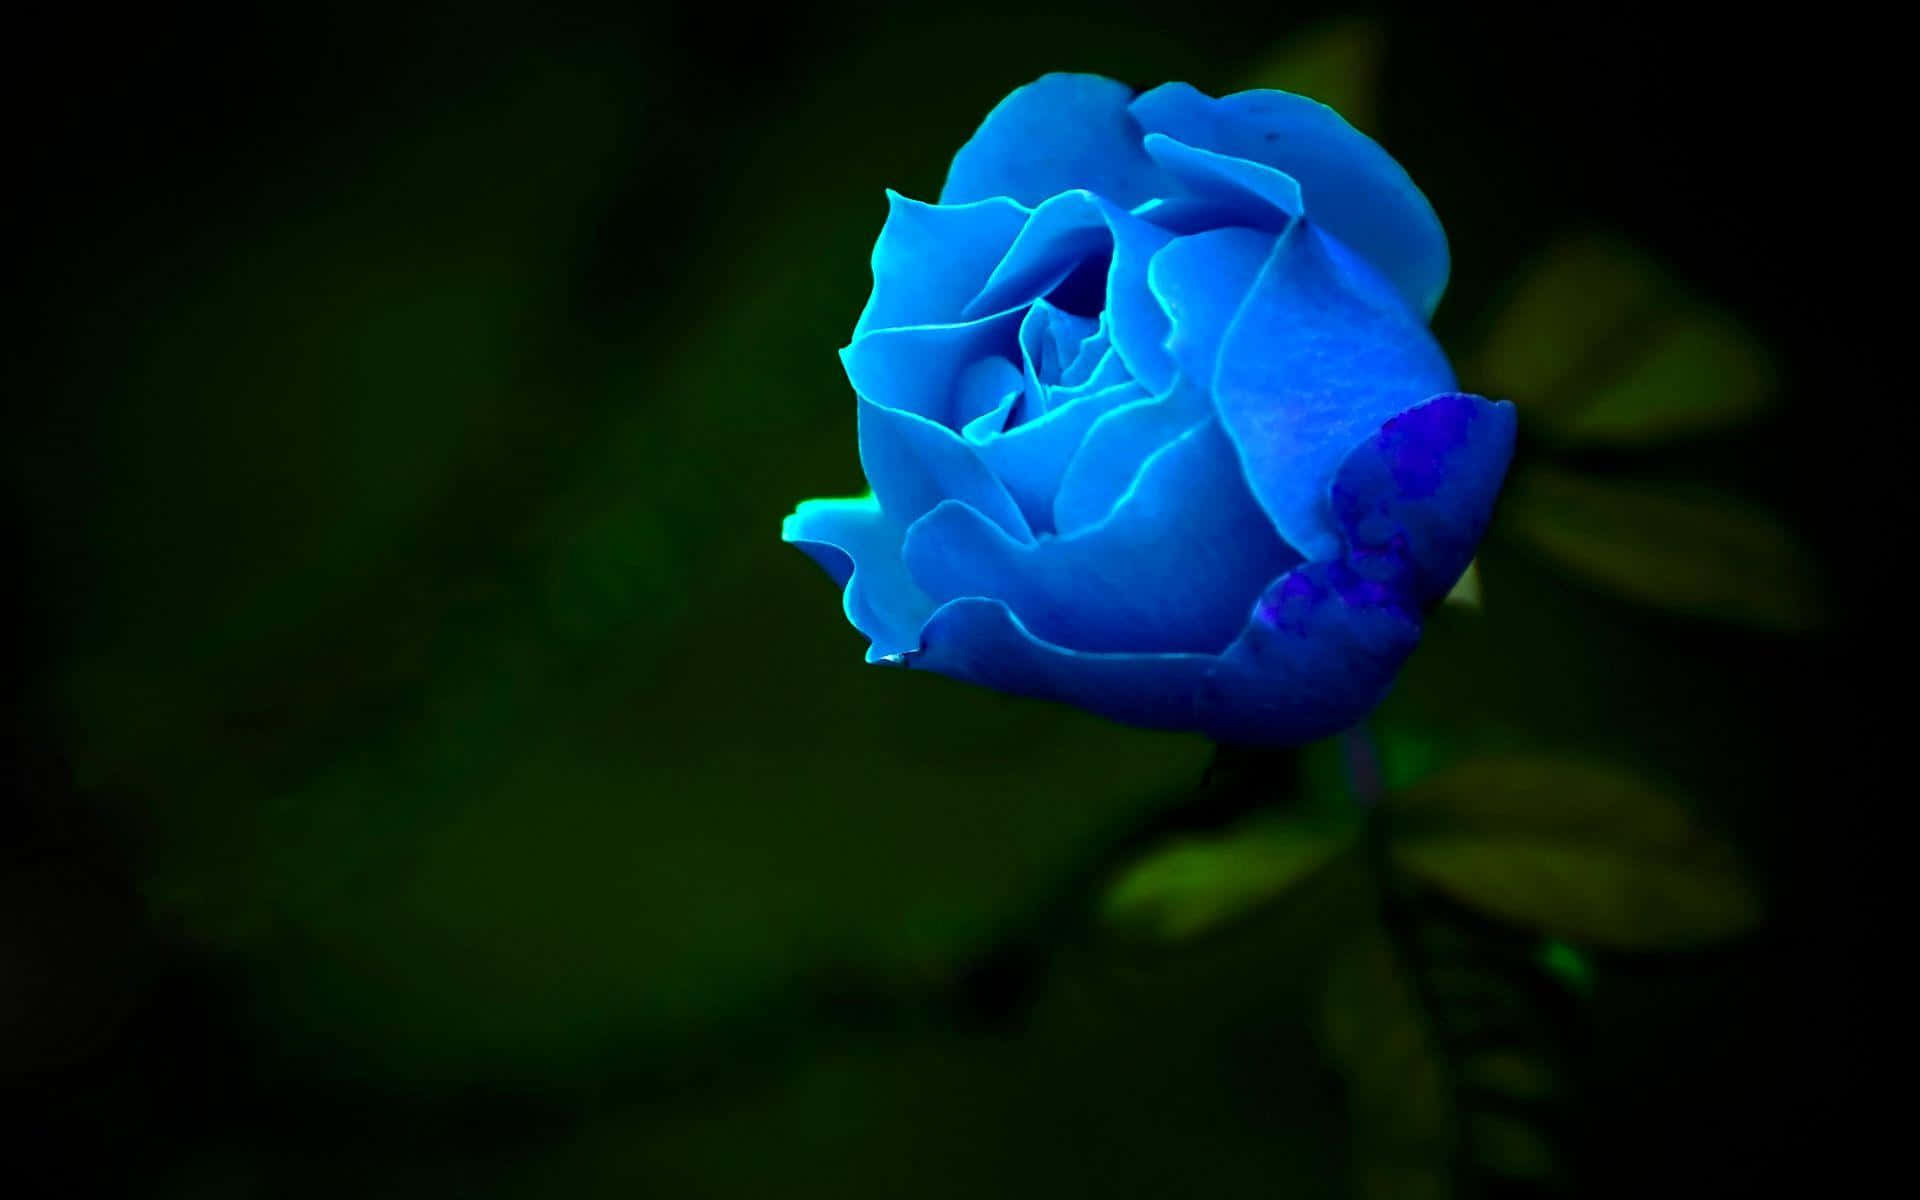 Semuestra Una Rosa Azul En La Oscuridad. Fondo de pantalla